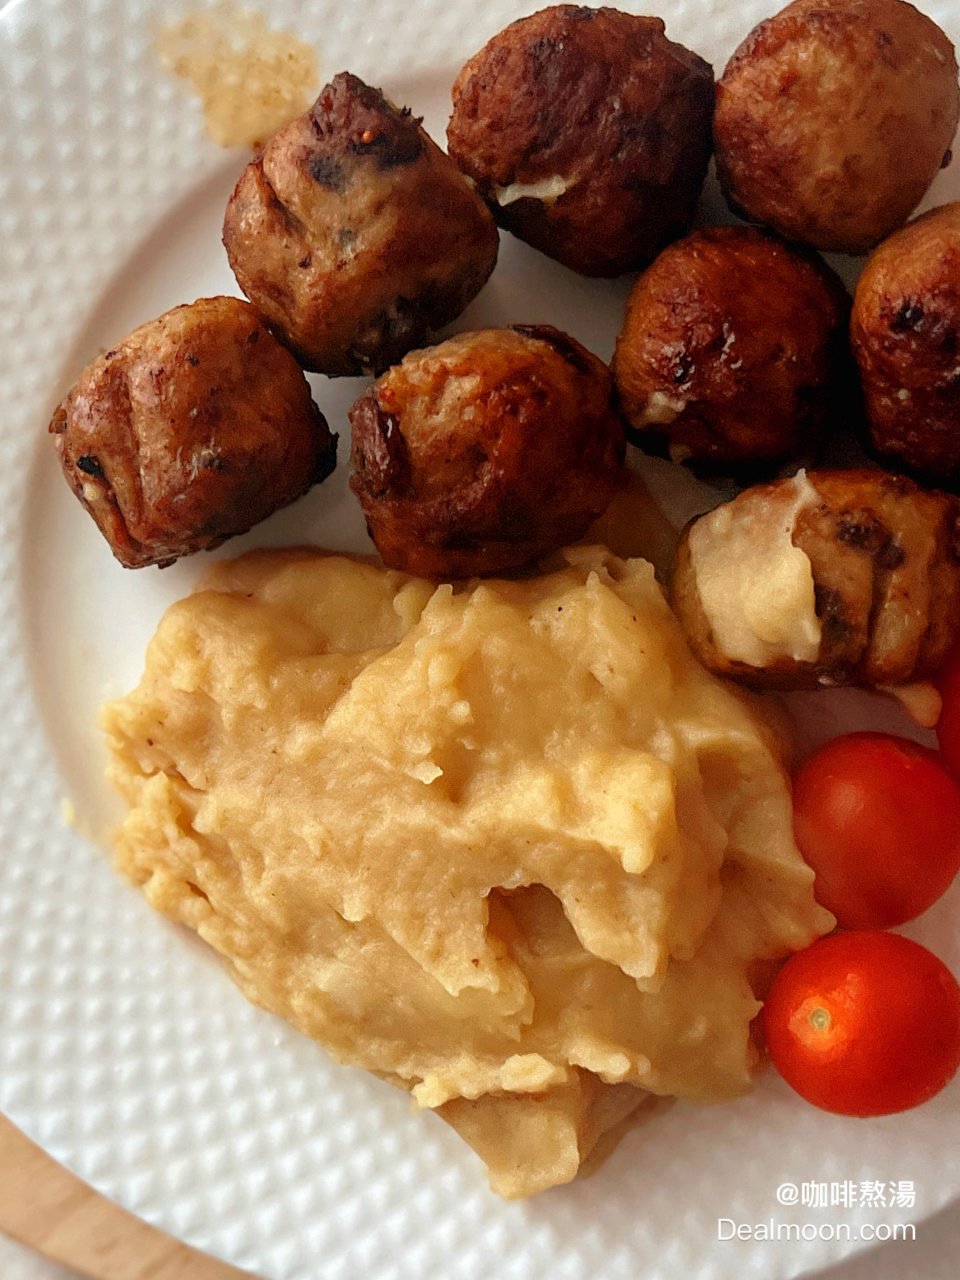 ALLEMANSRÄTTEN Mashed potatoes, frozen - IKEA